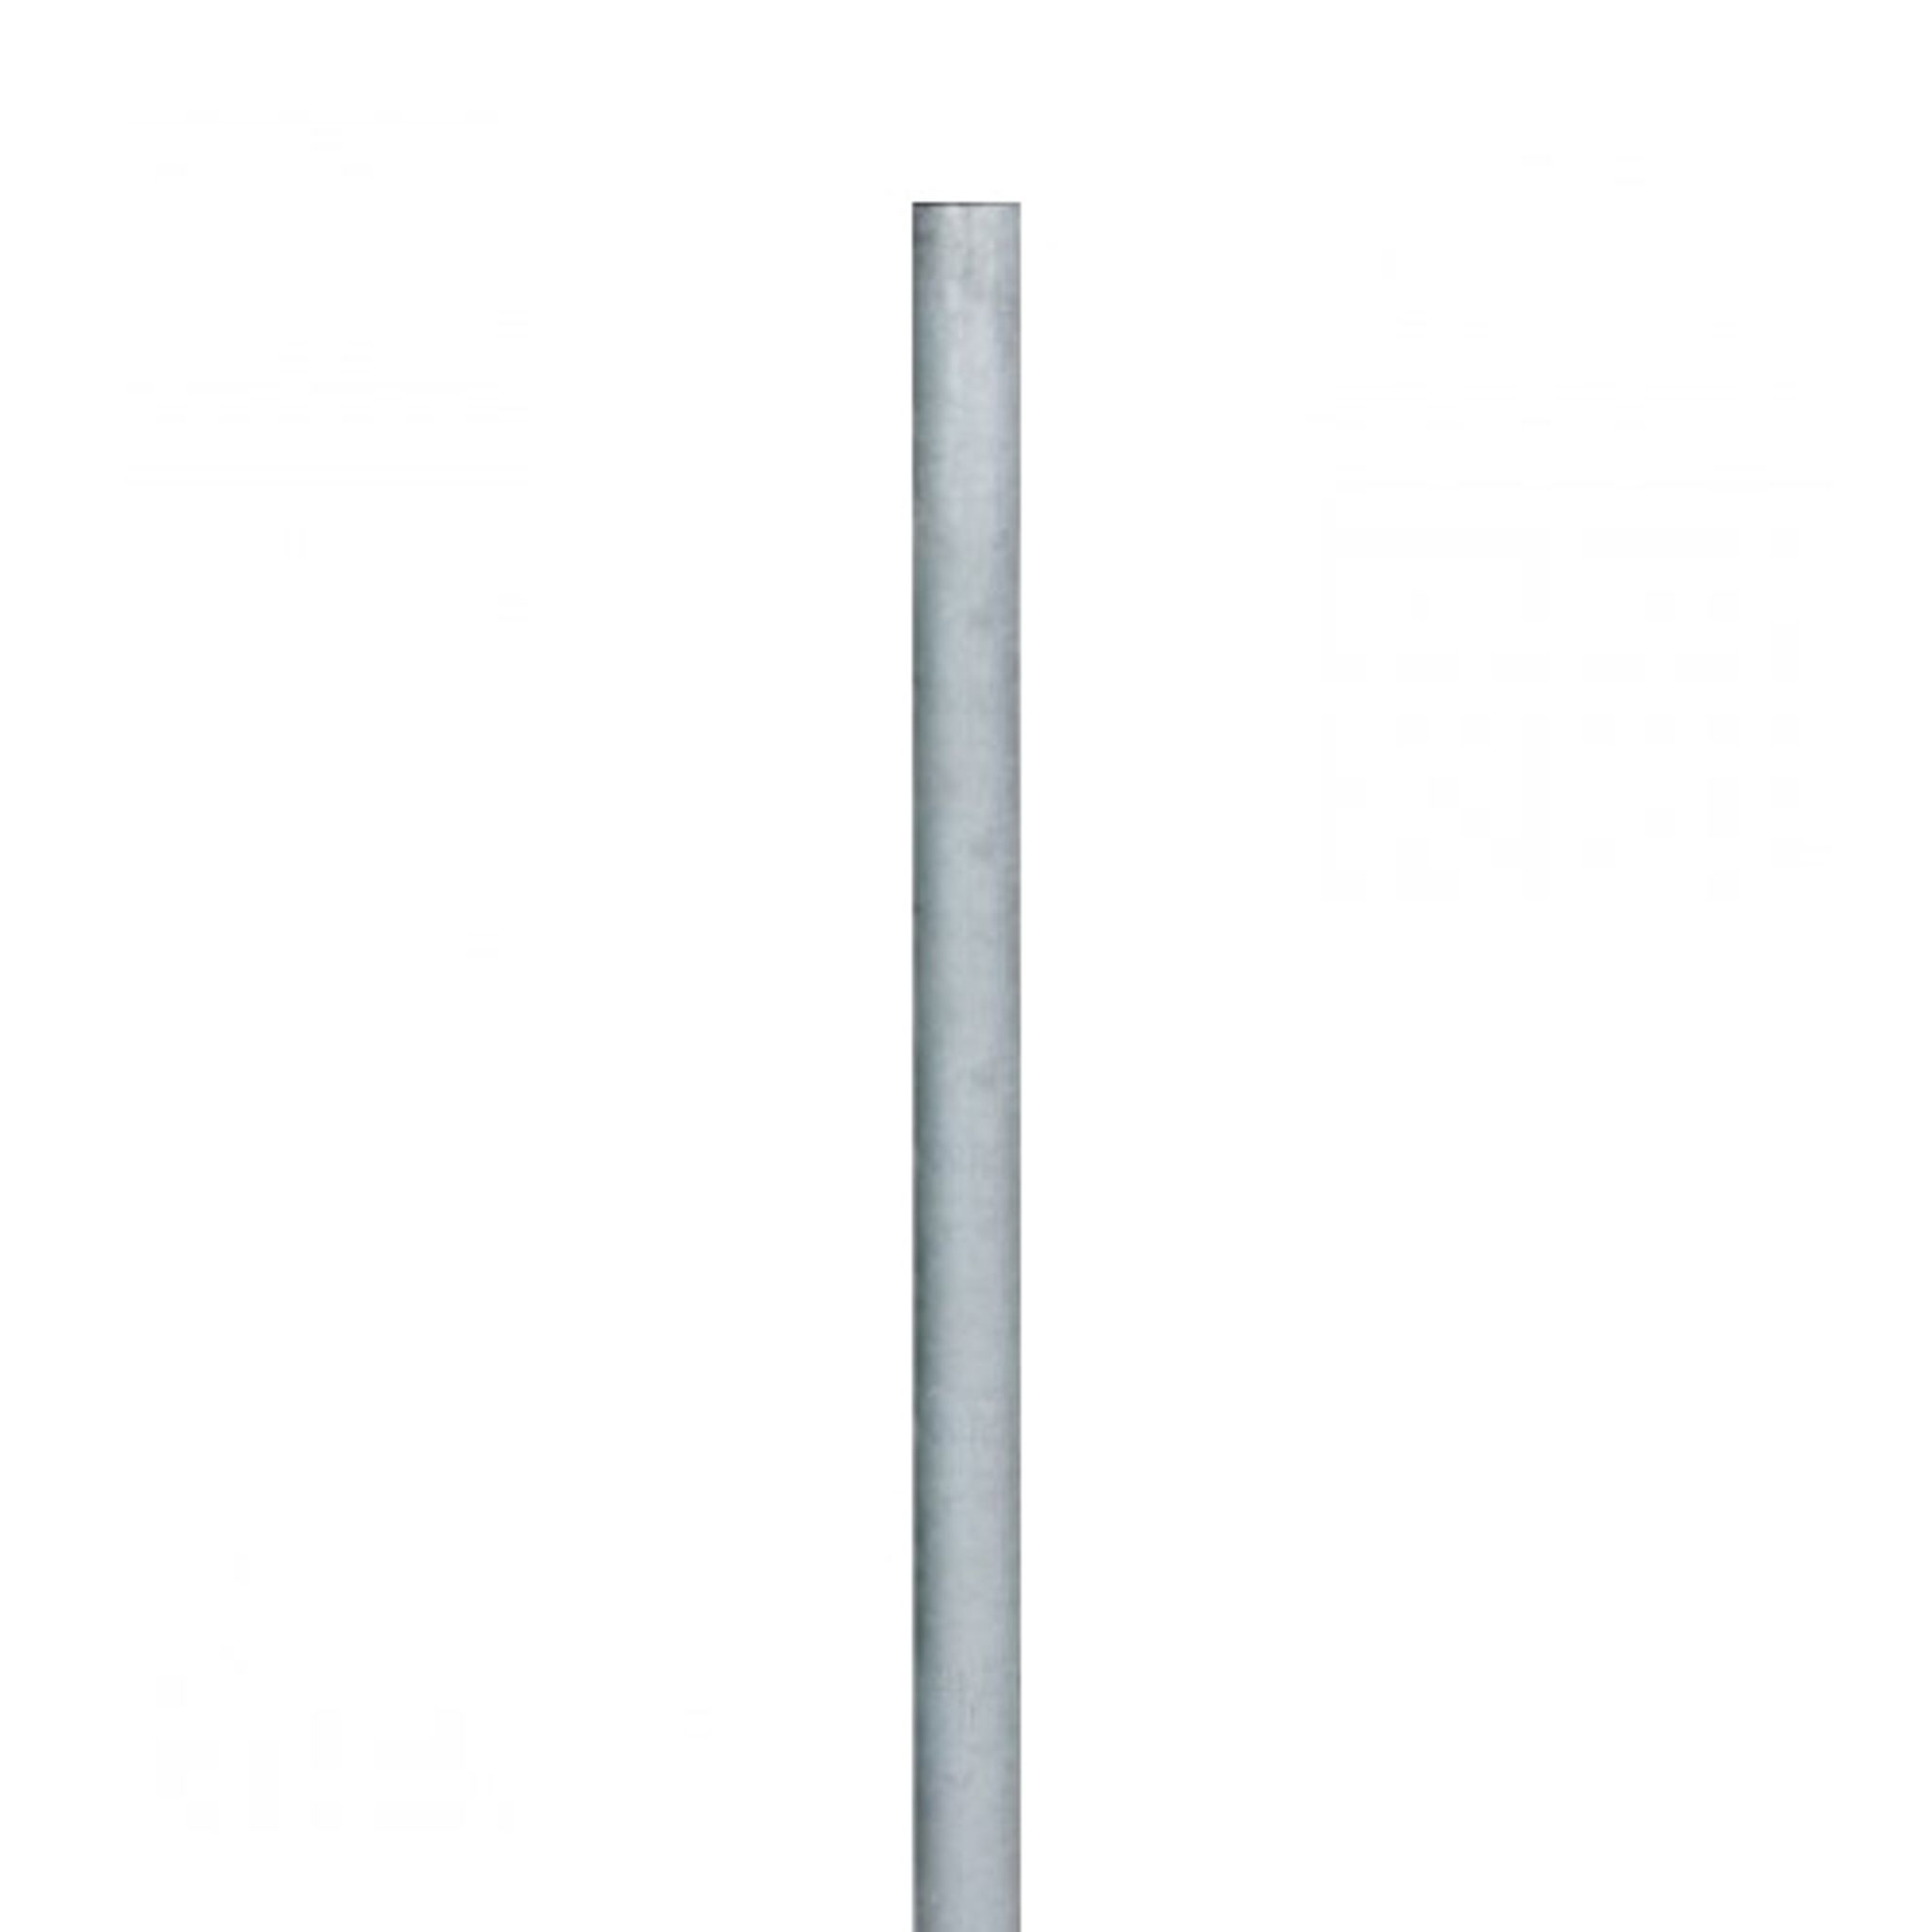 Sloupek pro osazení dopravních značek, FeZn trubka, 3 m